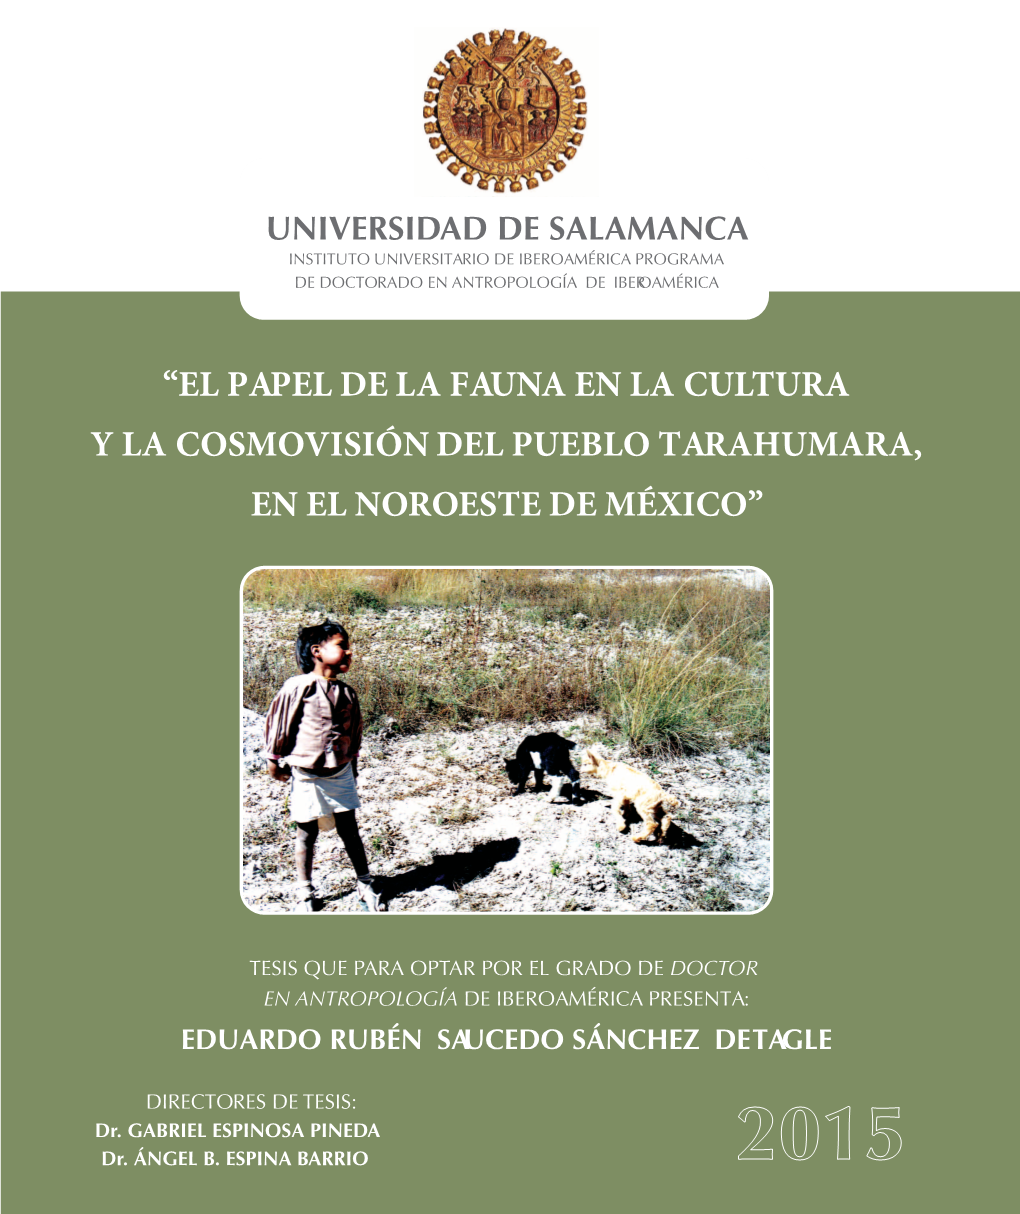 El Papel De La Fauna En La Cultura Y La Cosmovisión Del Pueblo Tarahumara, En El Noroeste De México”